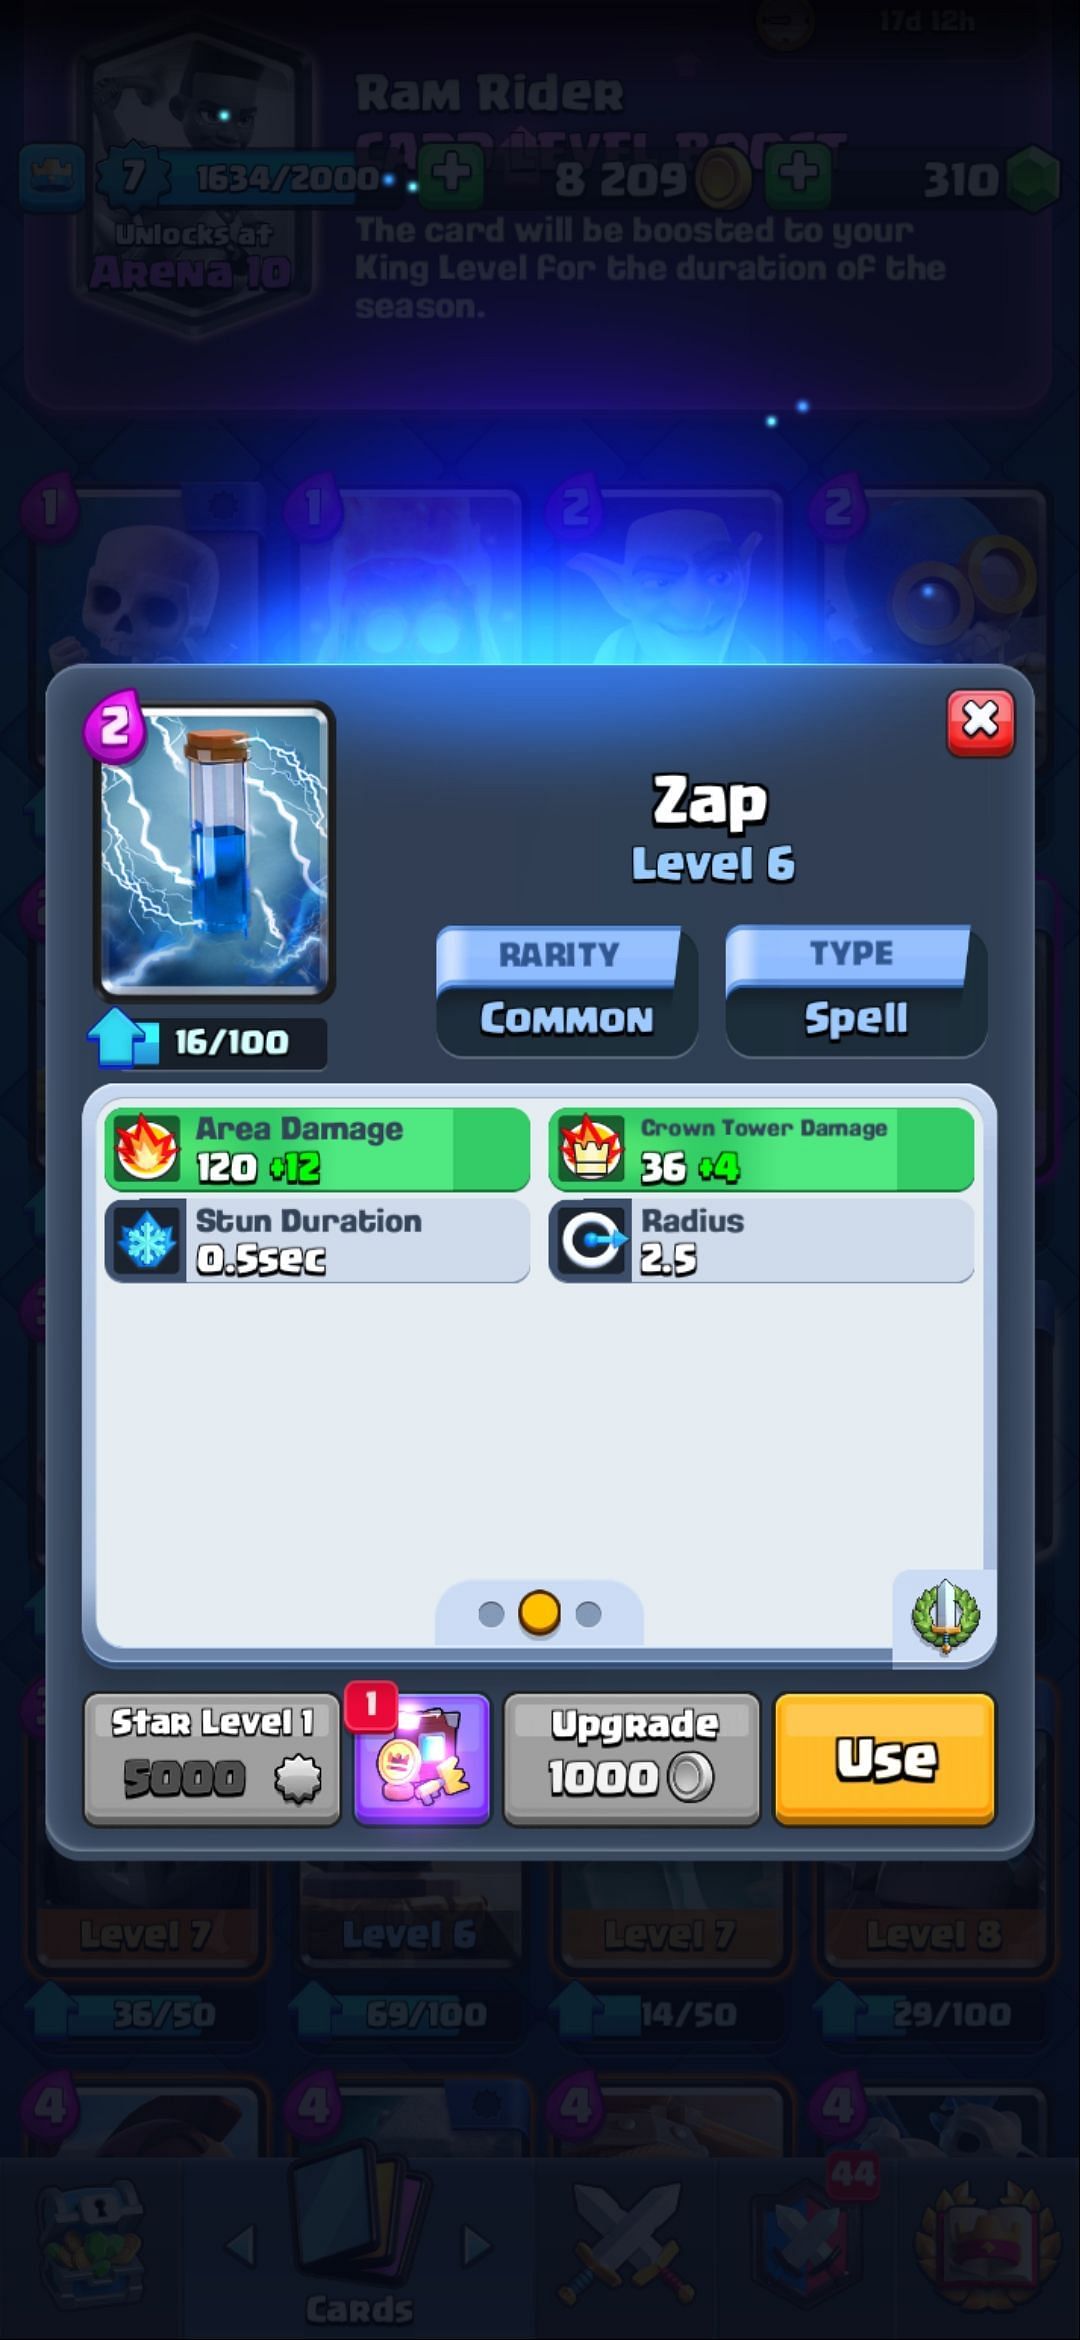 The Zap spell (Image via Sportskeeda)